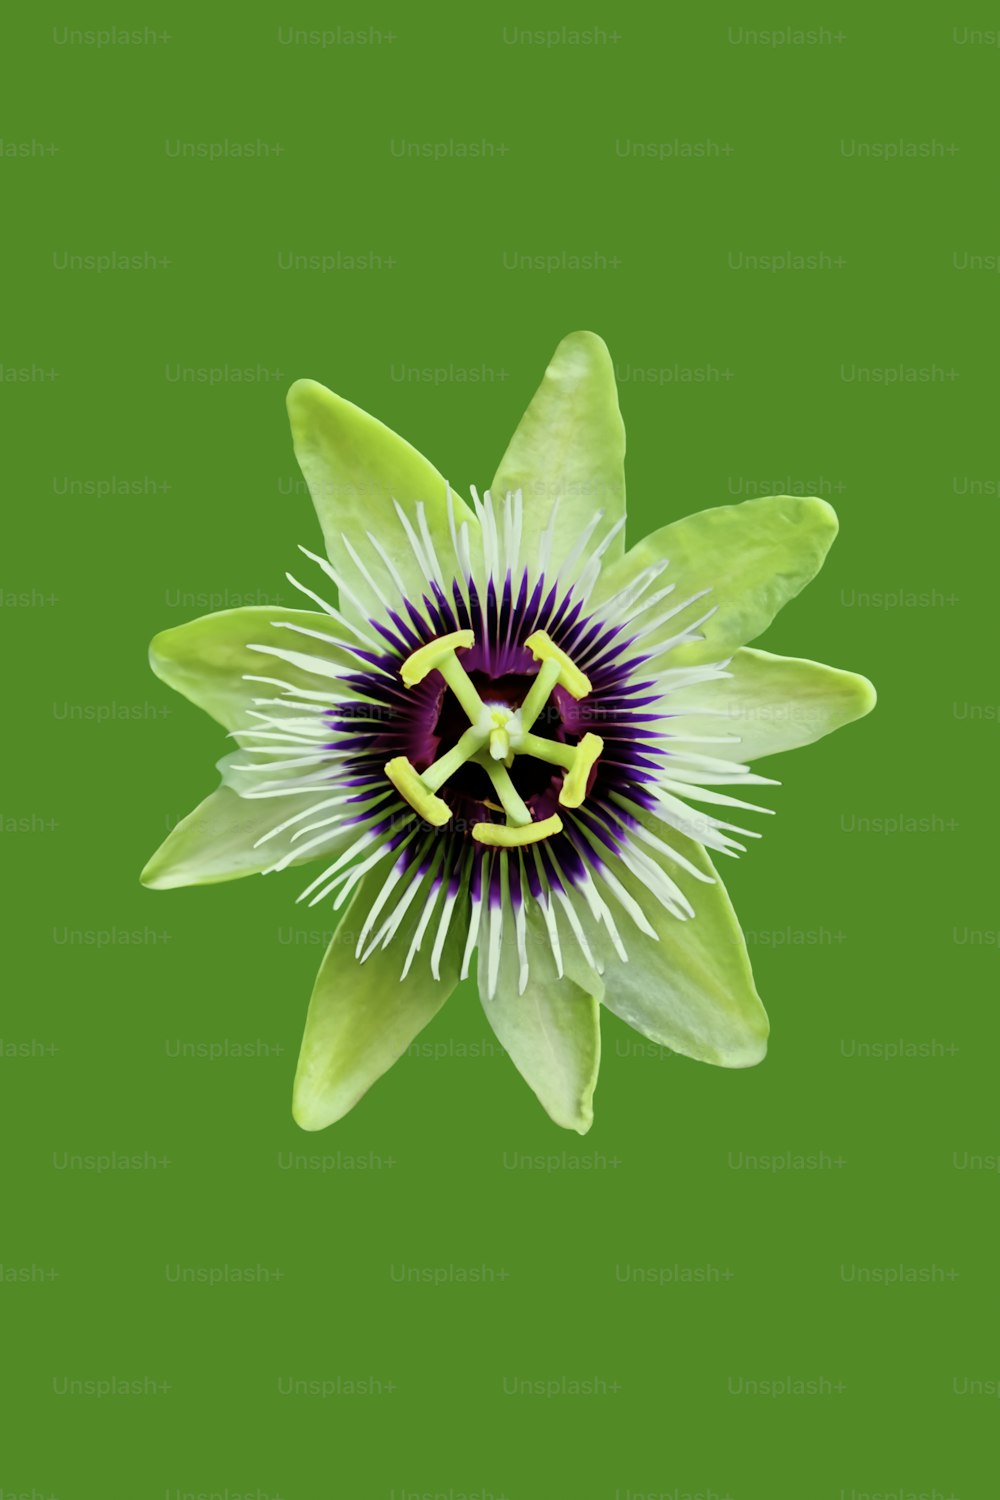 un fiore bianco con un centro viola su uno sfondo verde